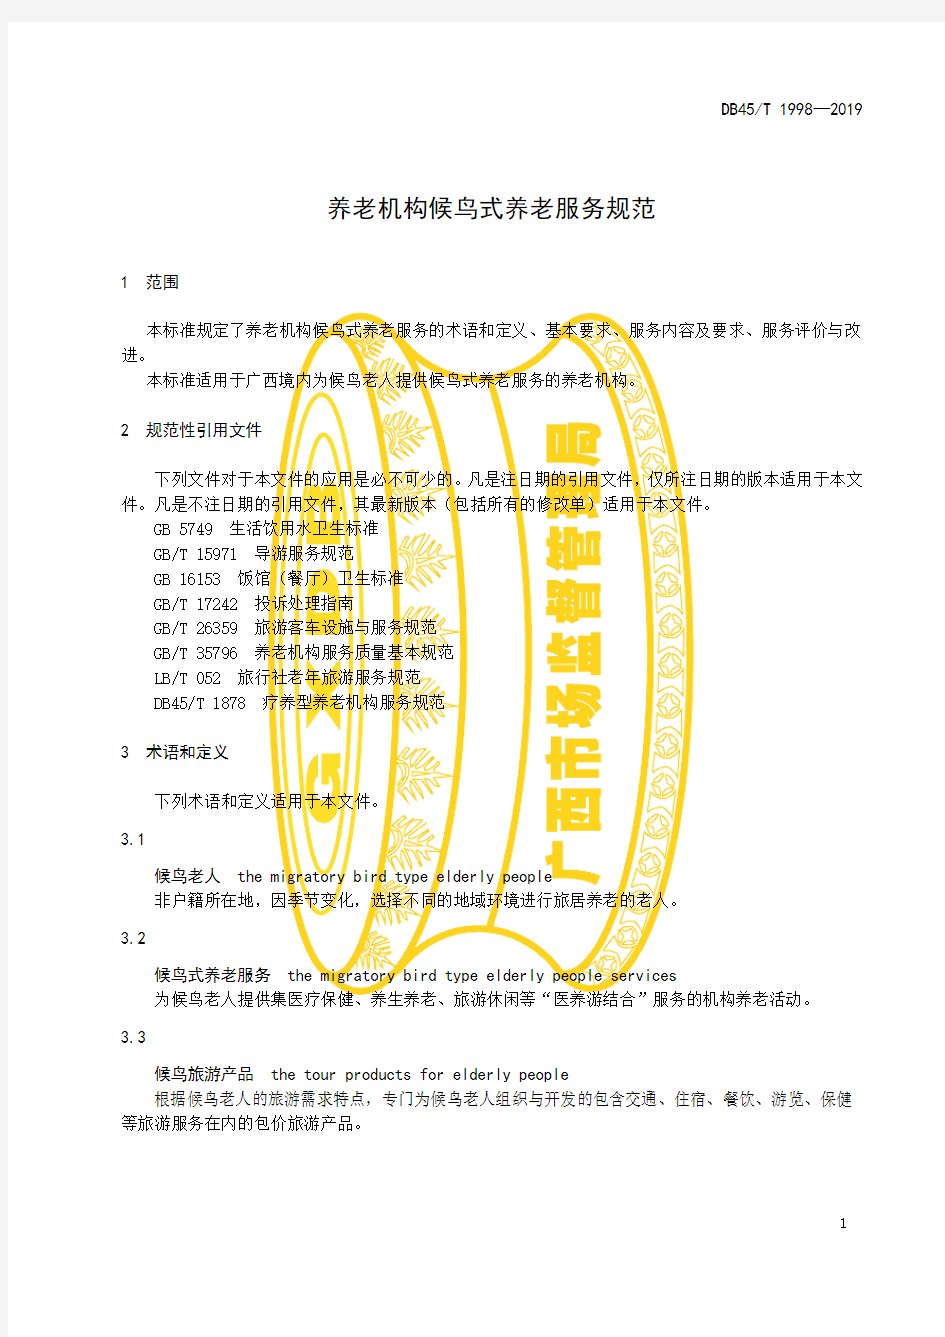 养老机构候鸟式养老服务规范广西壮族自治区地方标准2019版